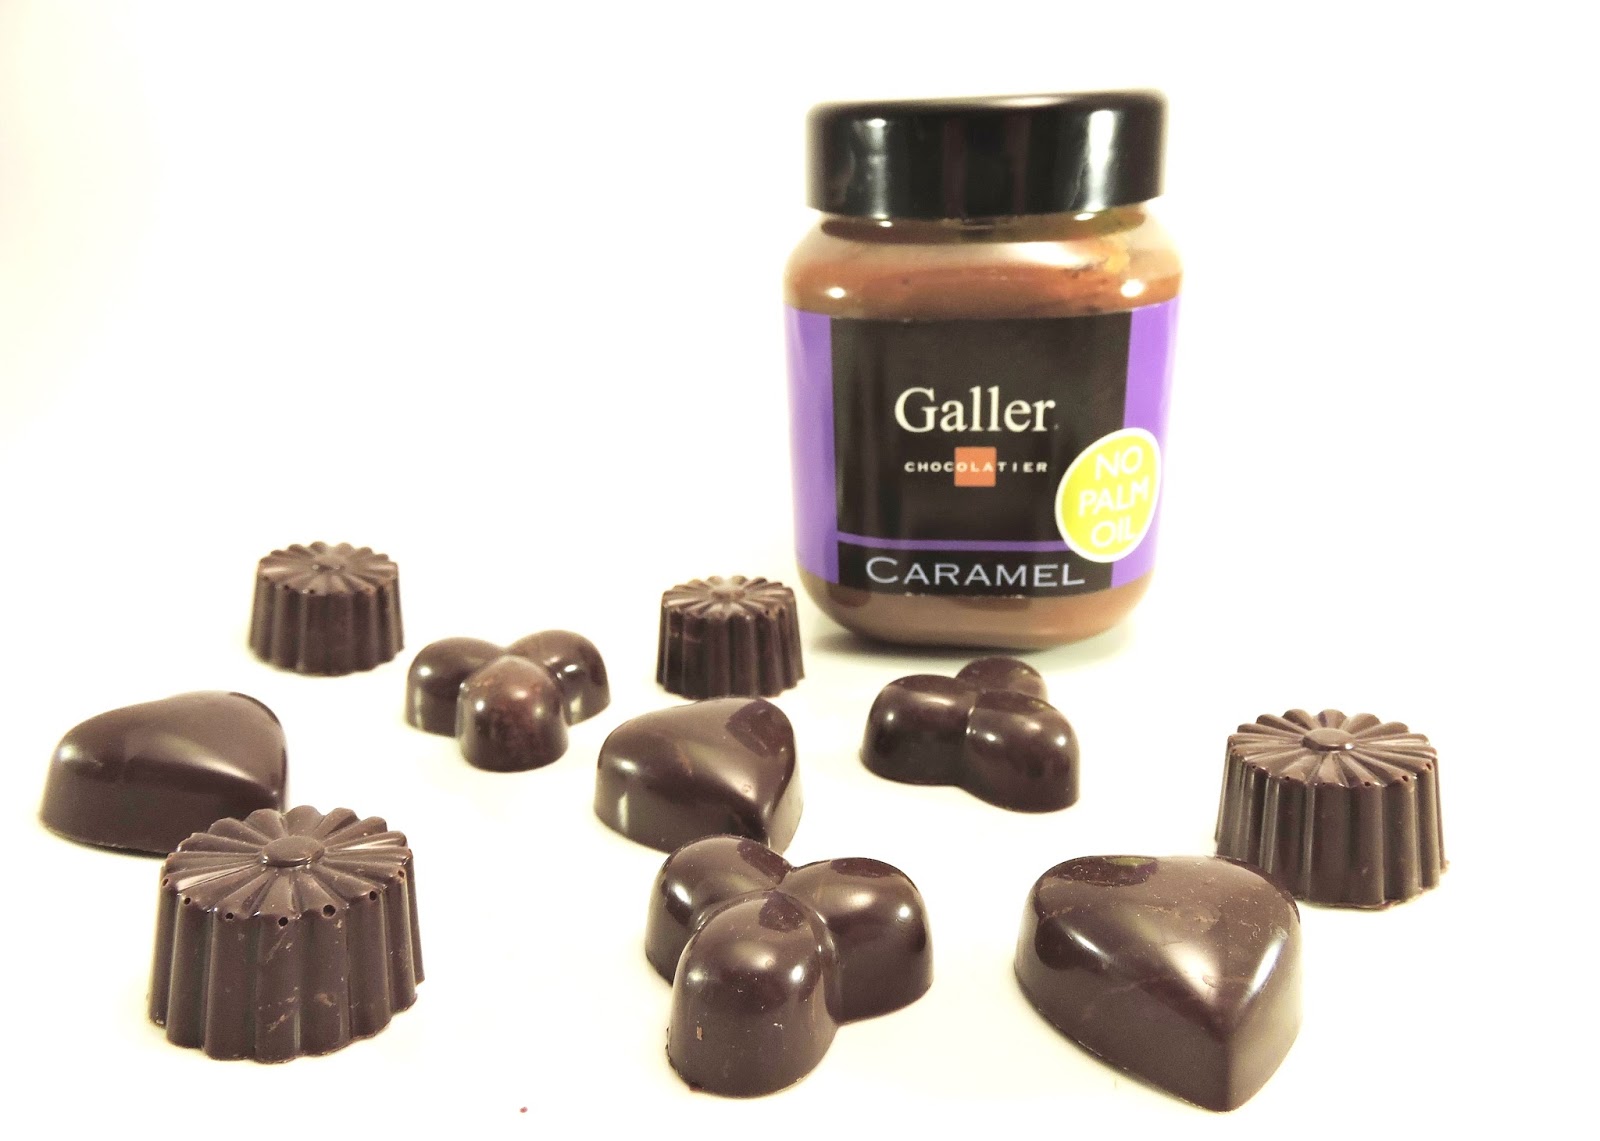 Etat de choc: Praline au chocolat noir fourrée au caramel Galler